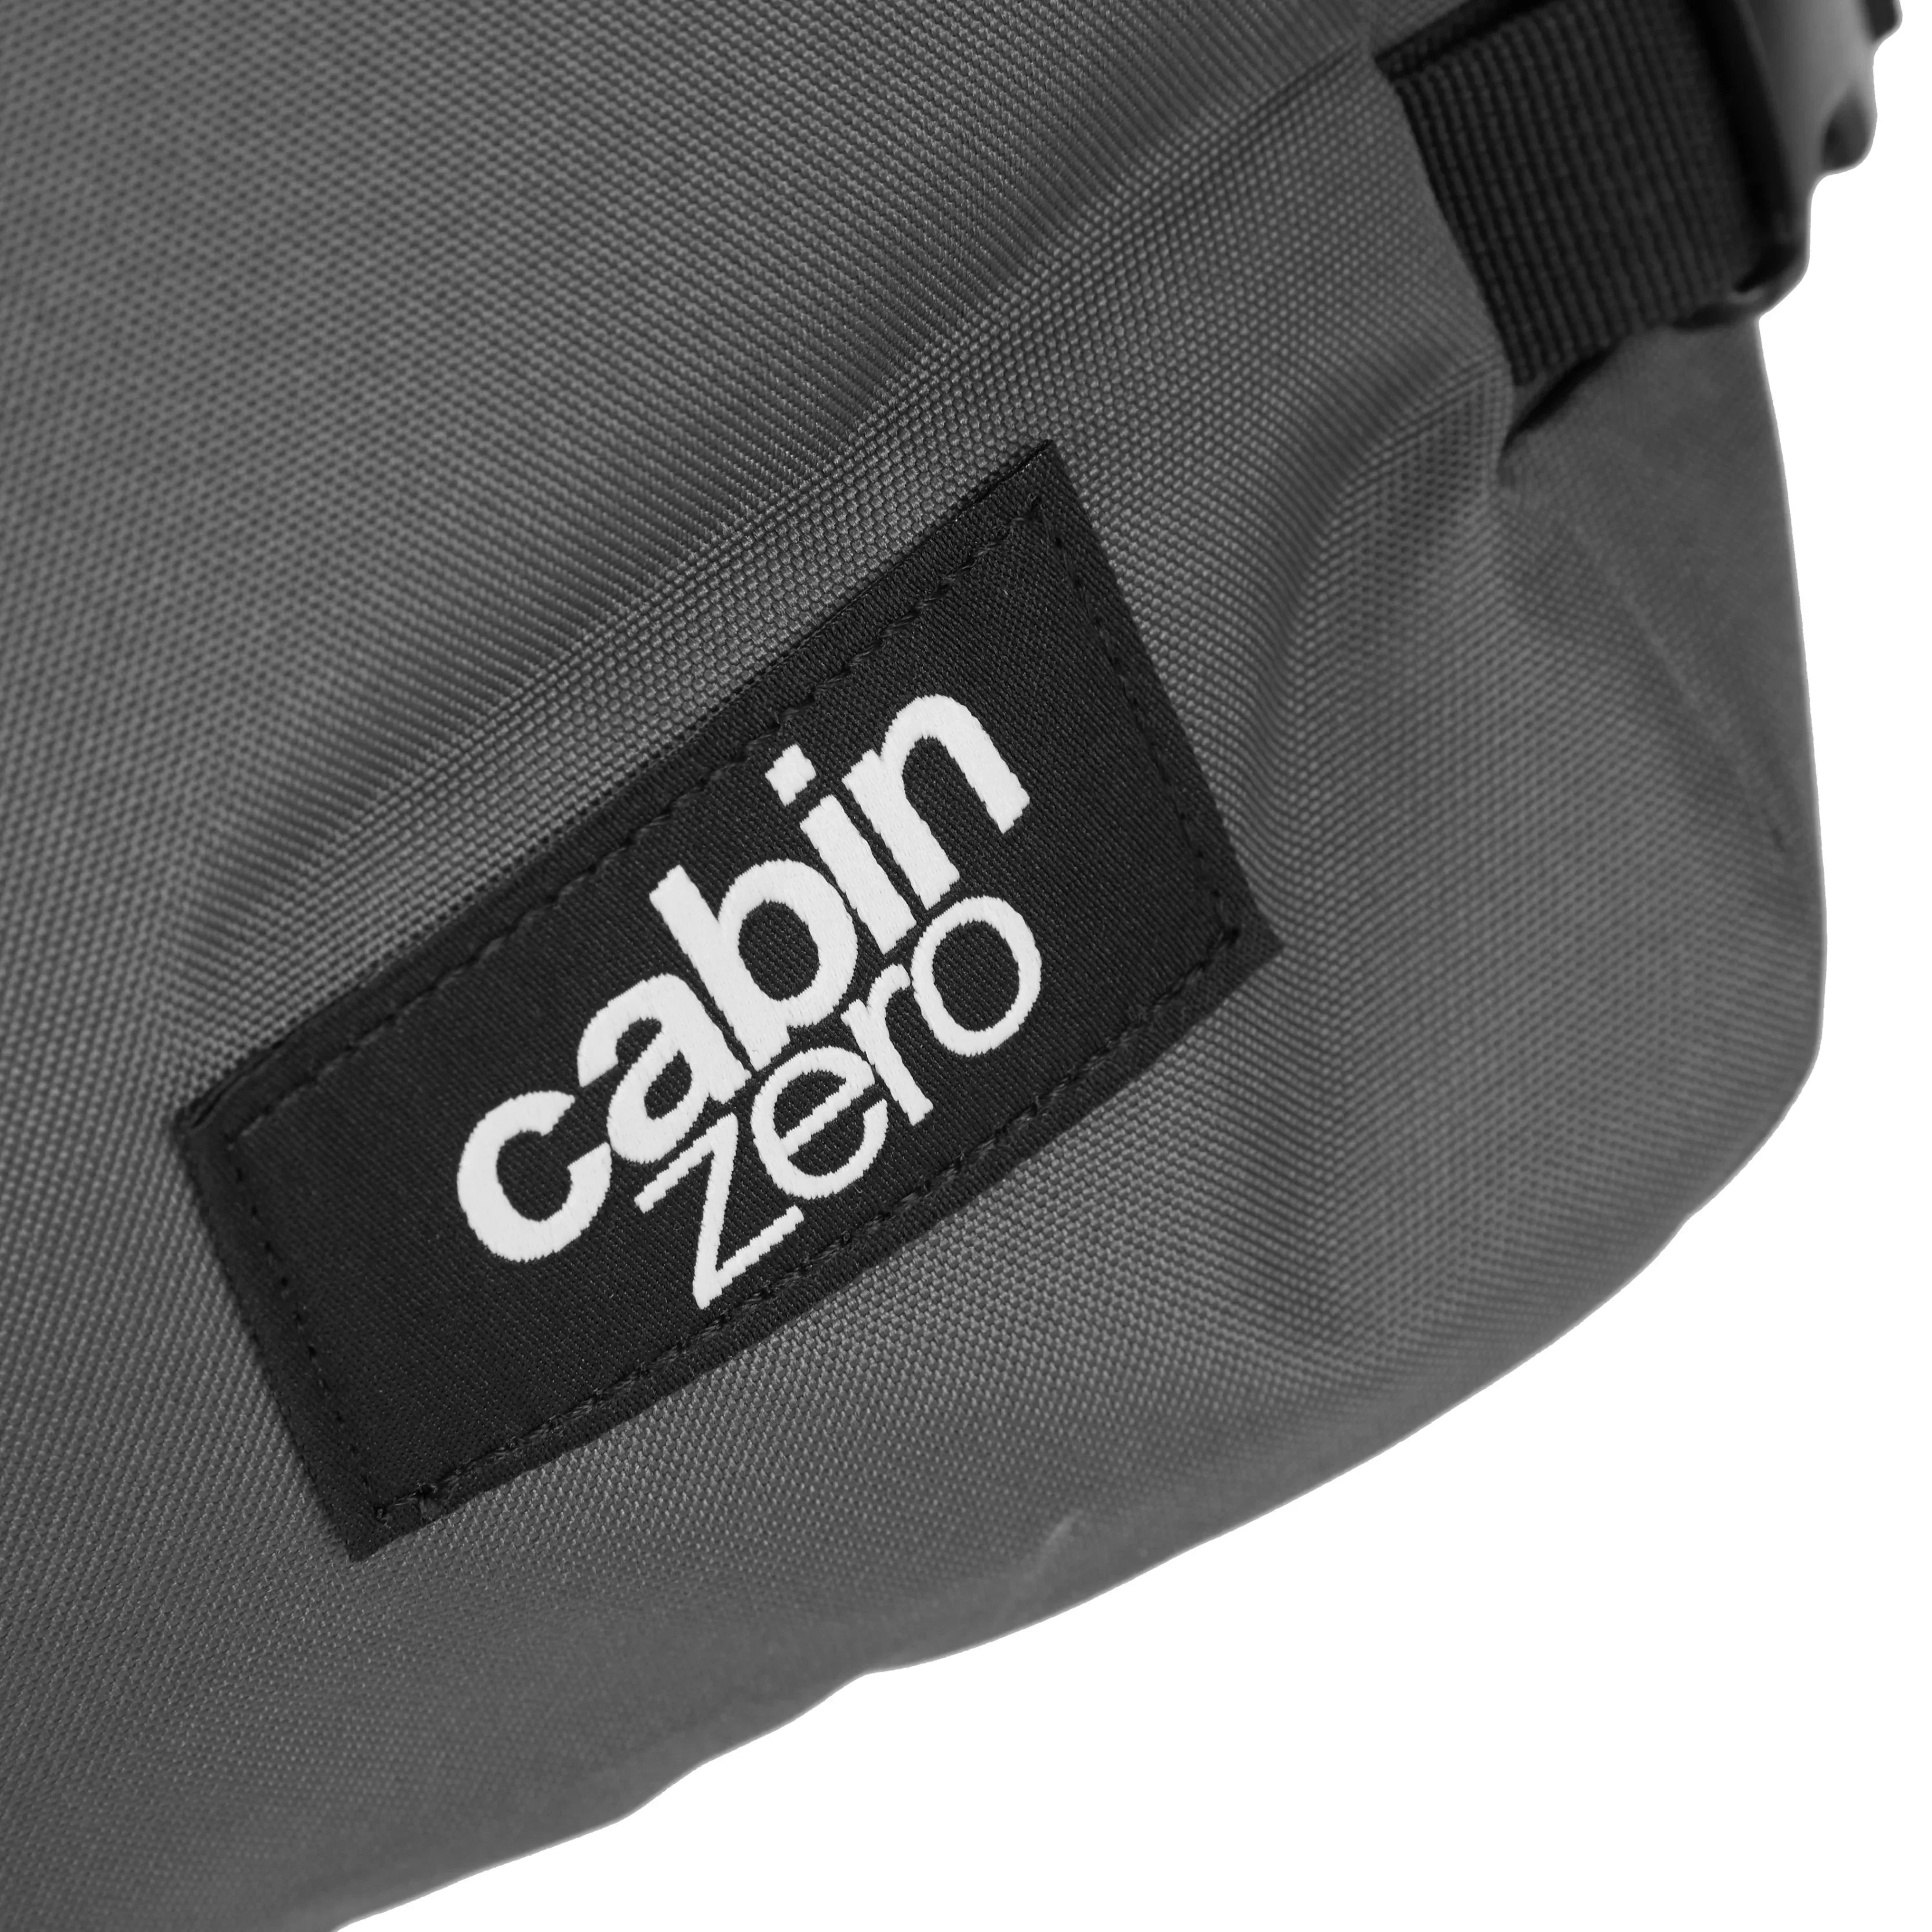 CabinZero Cabin Backpacks Classic 28L Sac à dos 39 cm - Noir Absolu